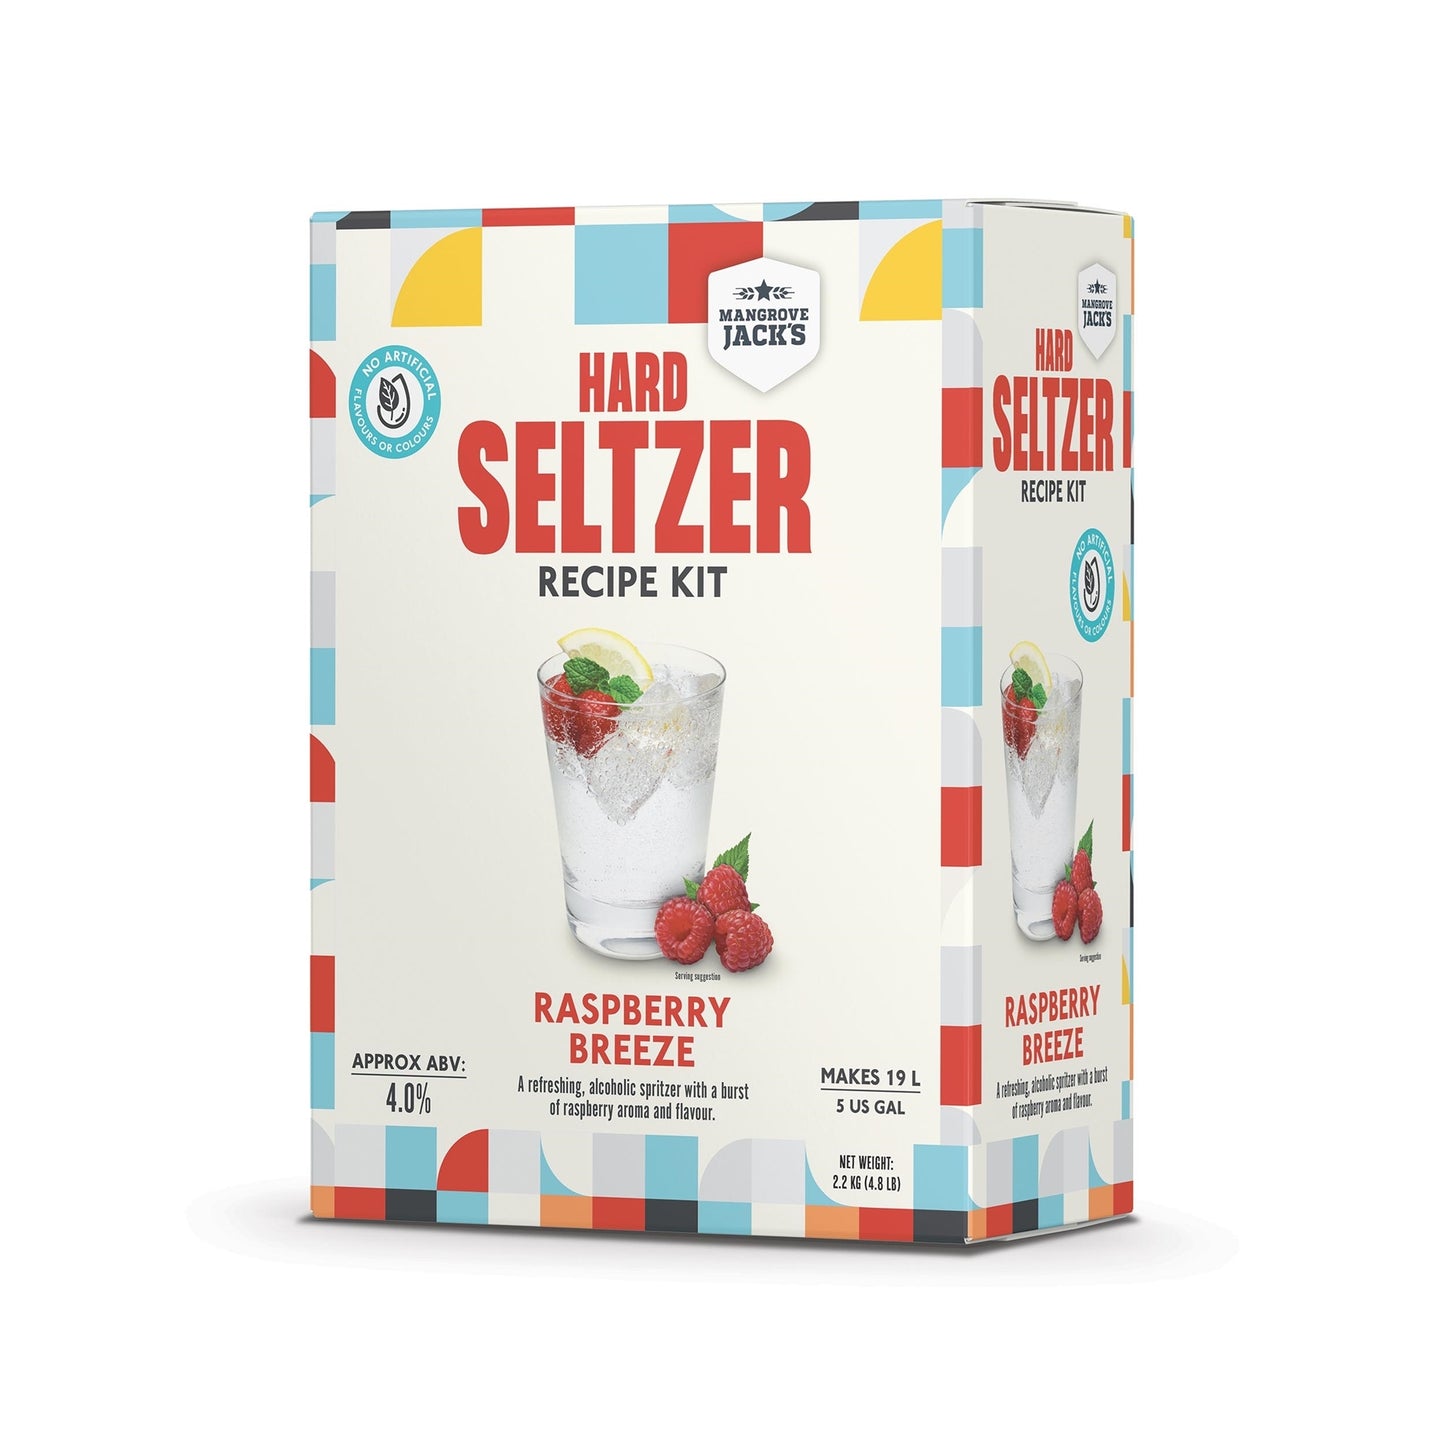 Hard Seltzer Recipe Kits